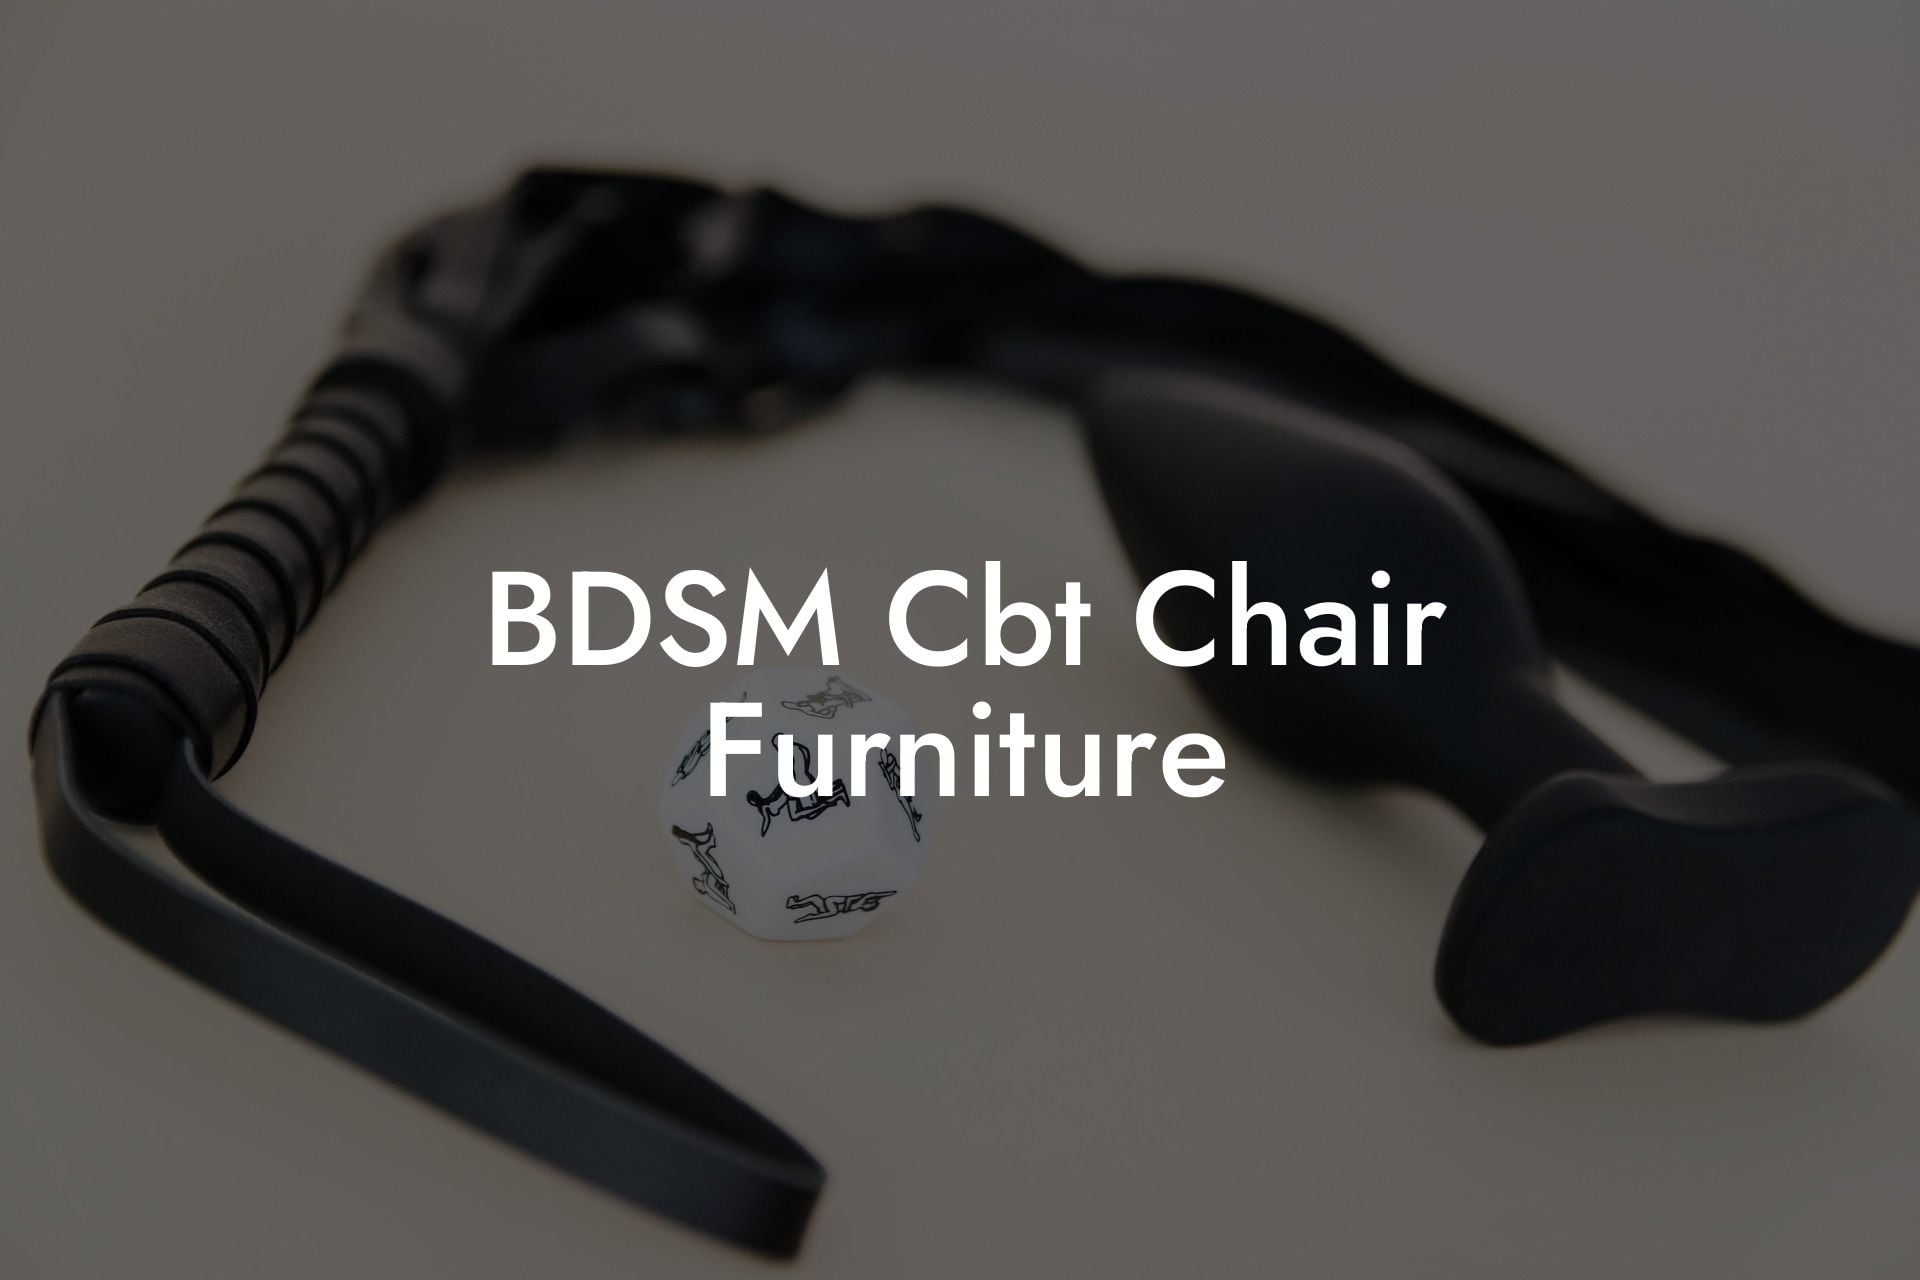 BDSM Cbt Chair Furniture